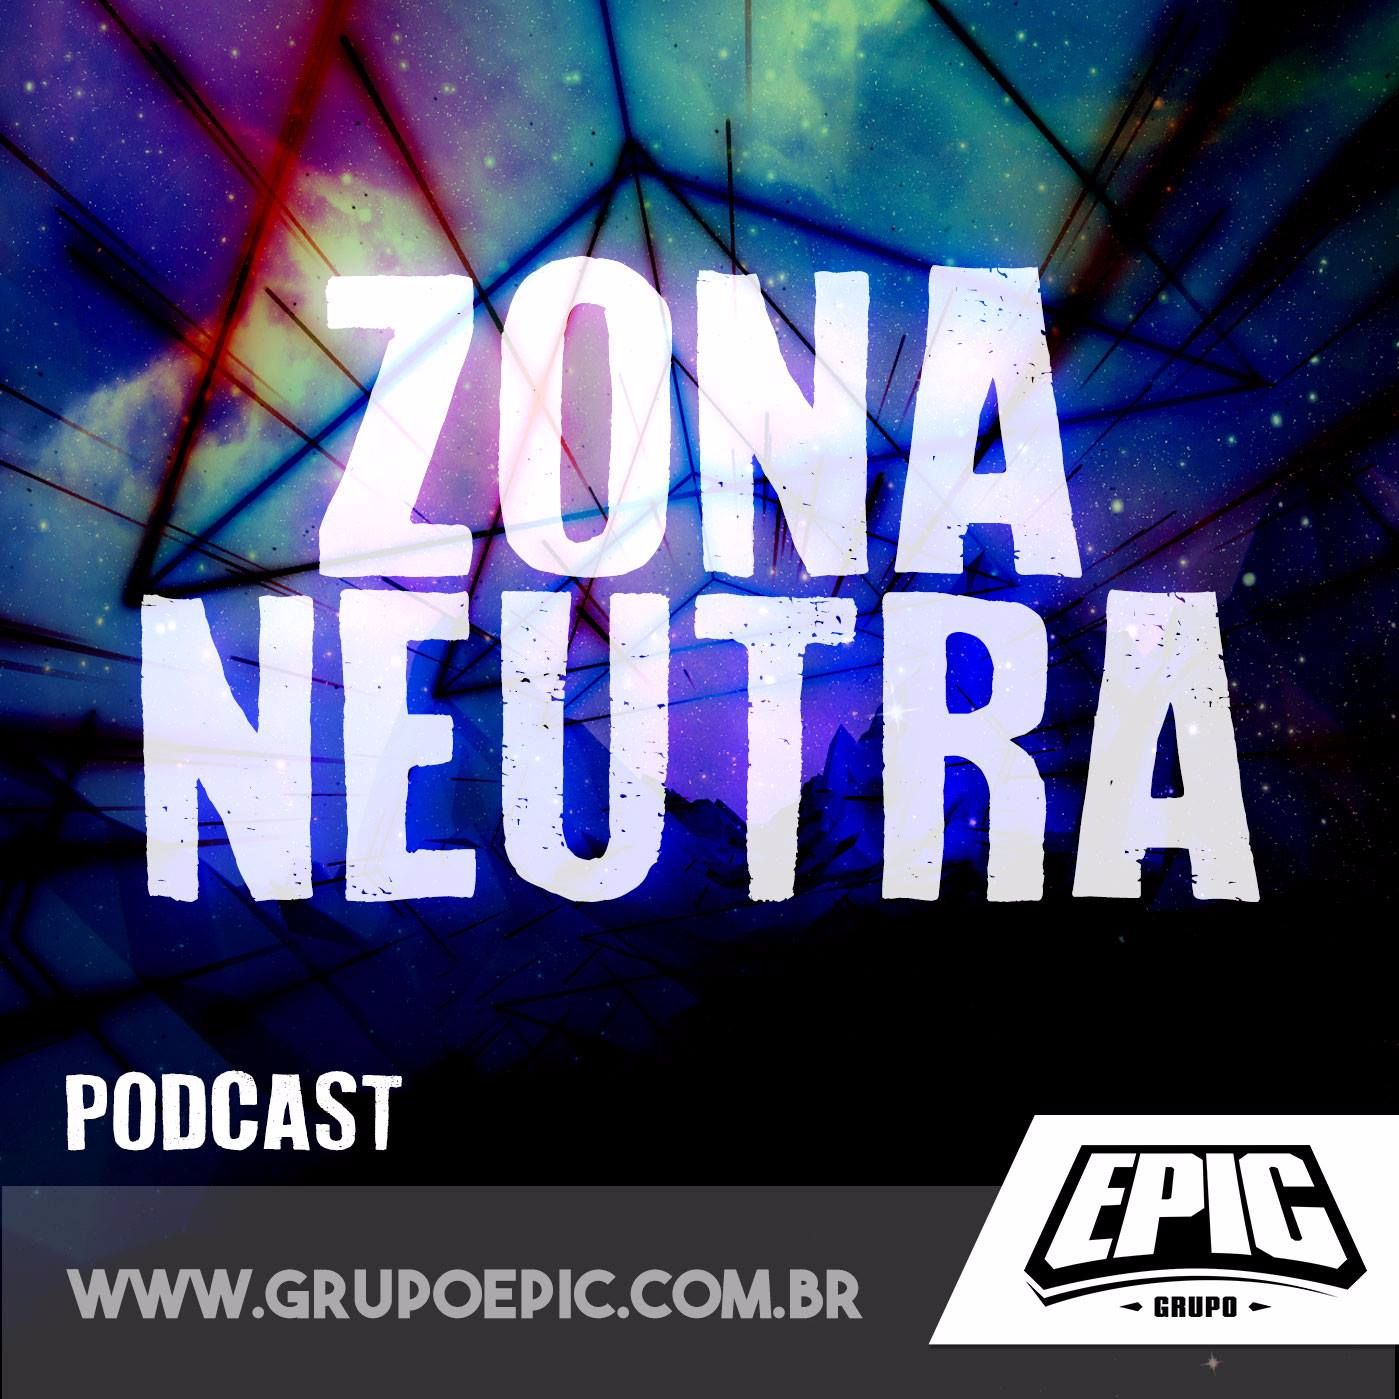 Zona Neutra S02E14 - Os Últimos Jedi